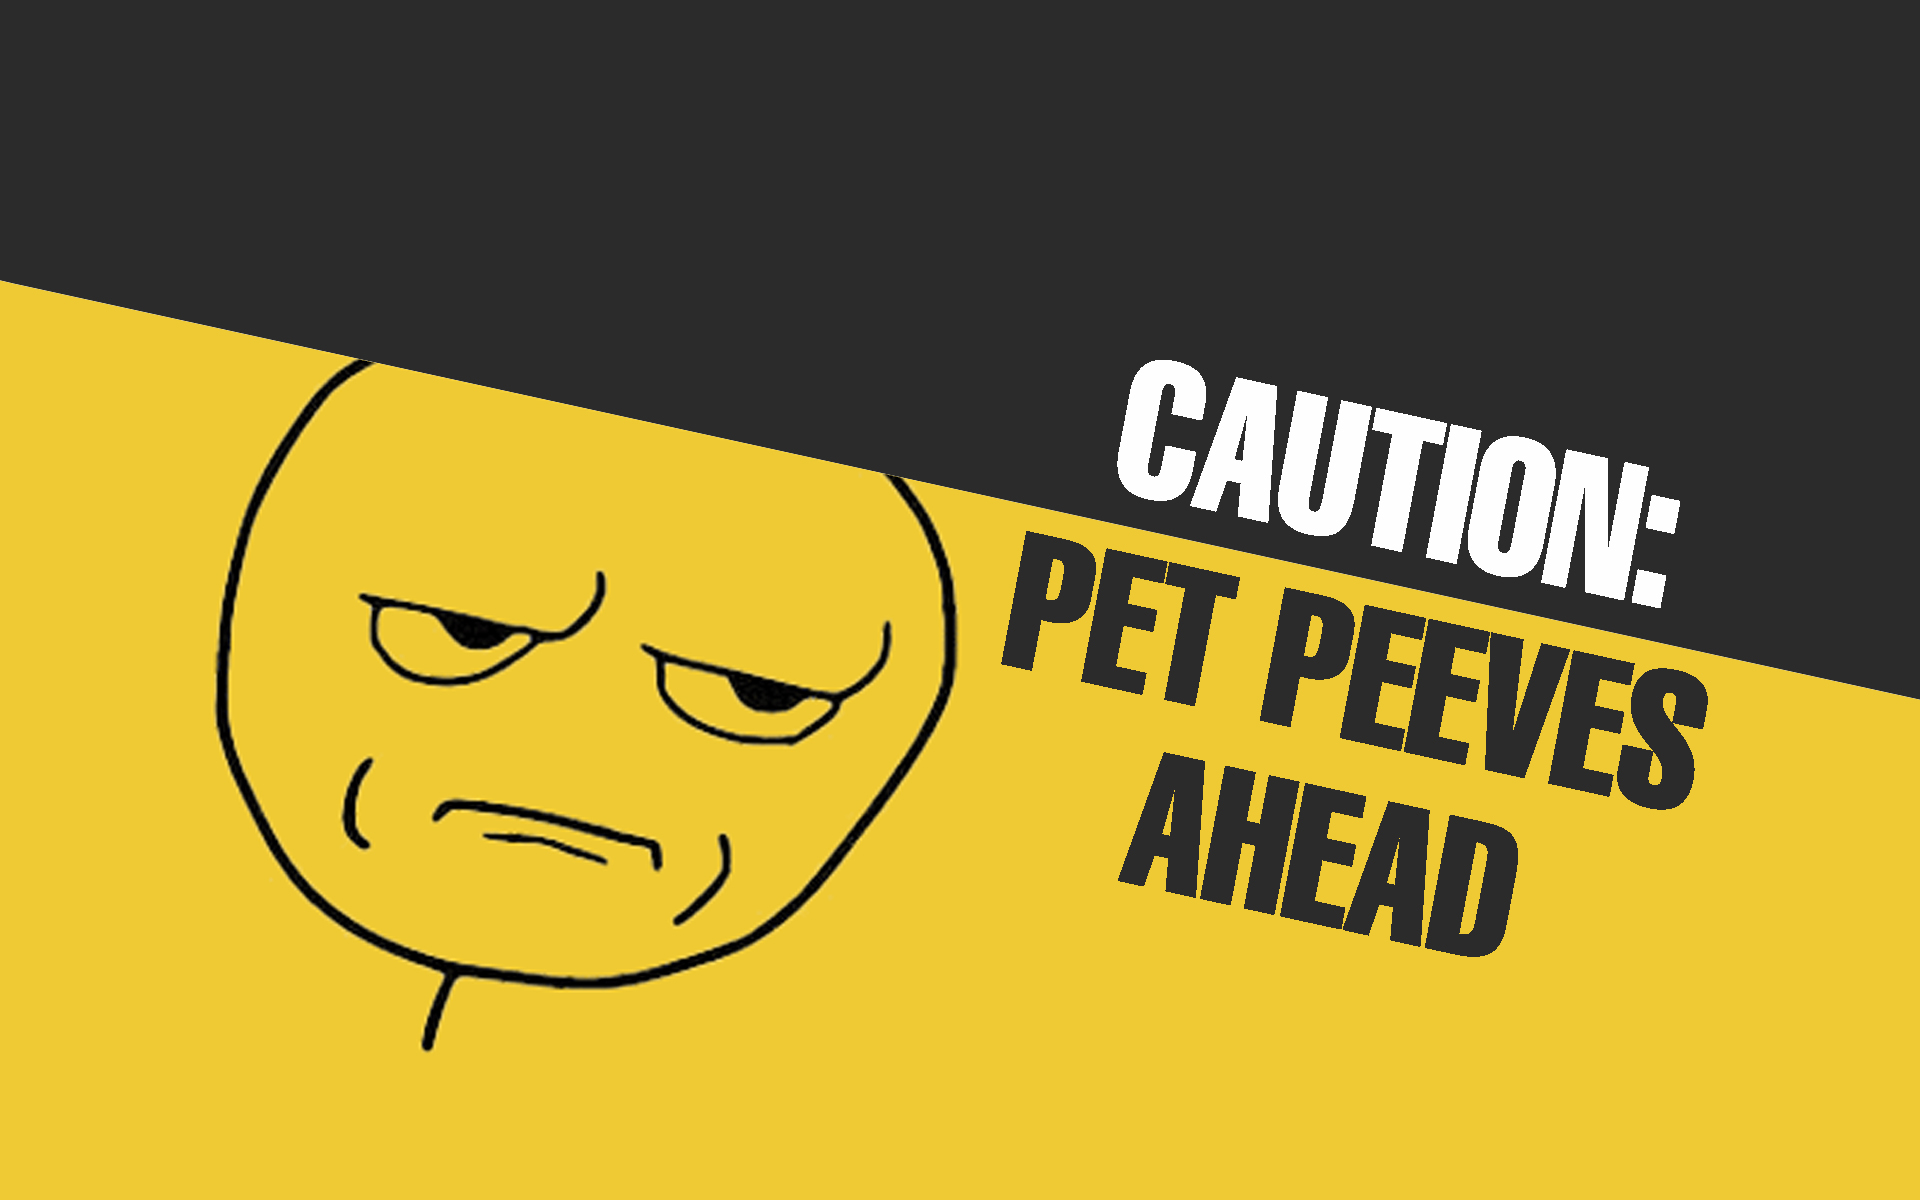 Caution: Pet Peeves Ahead